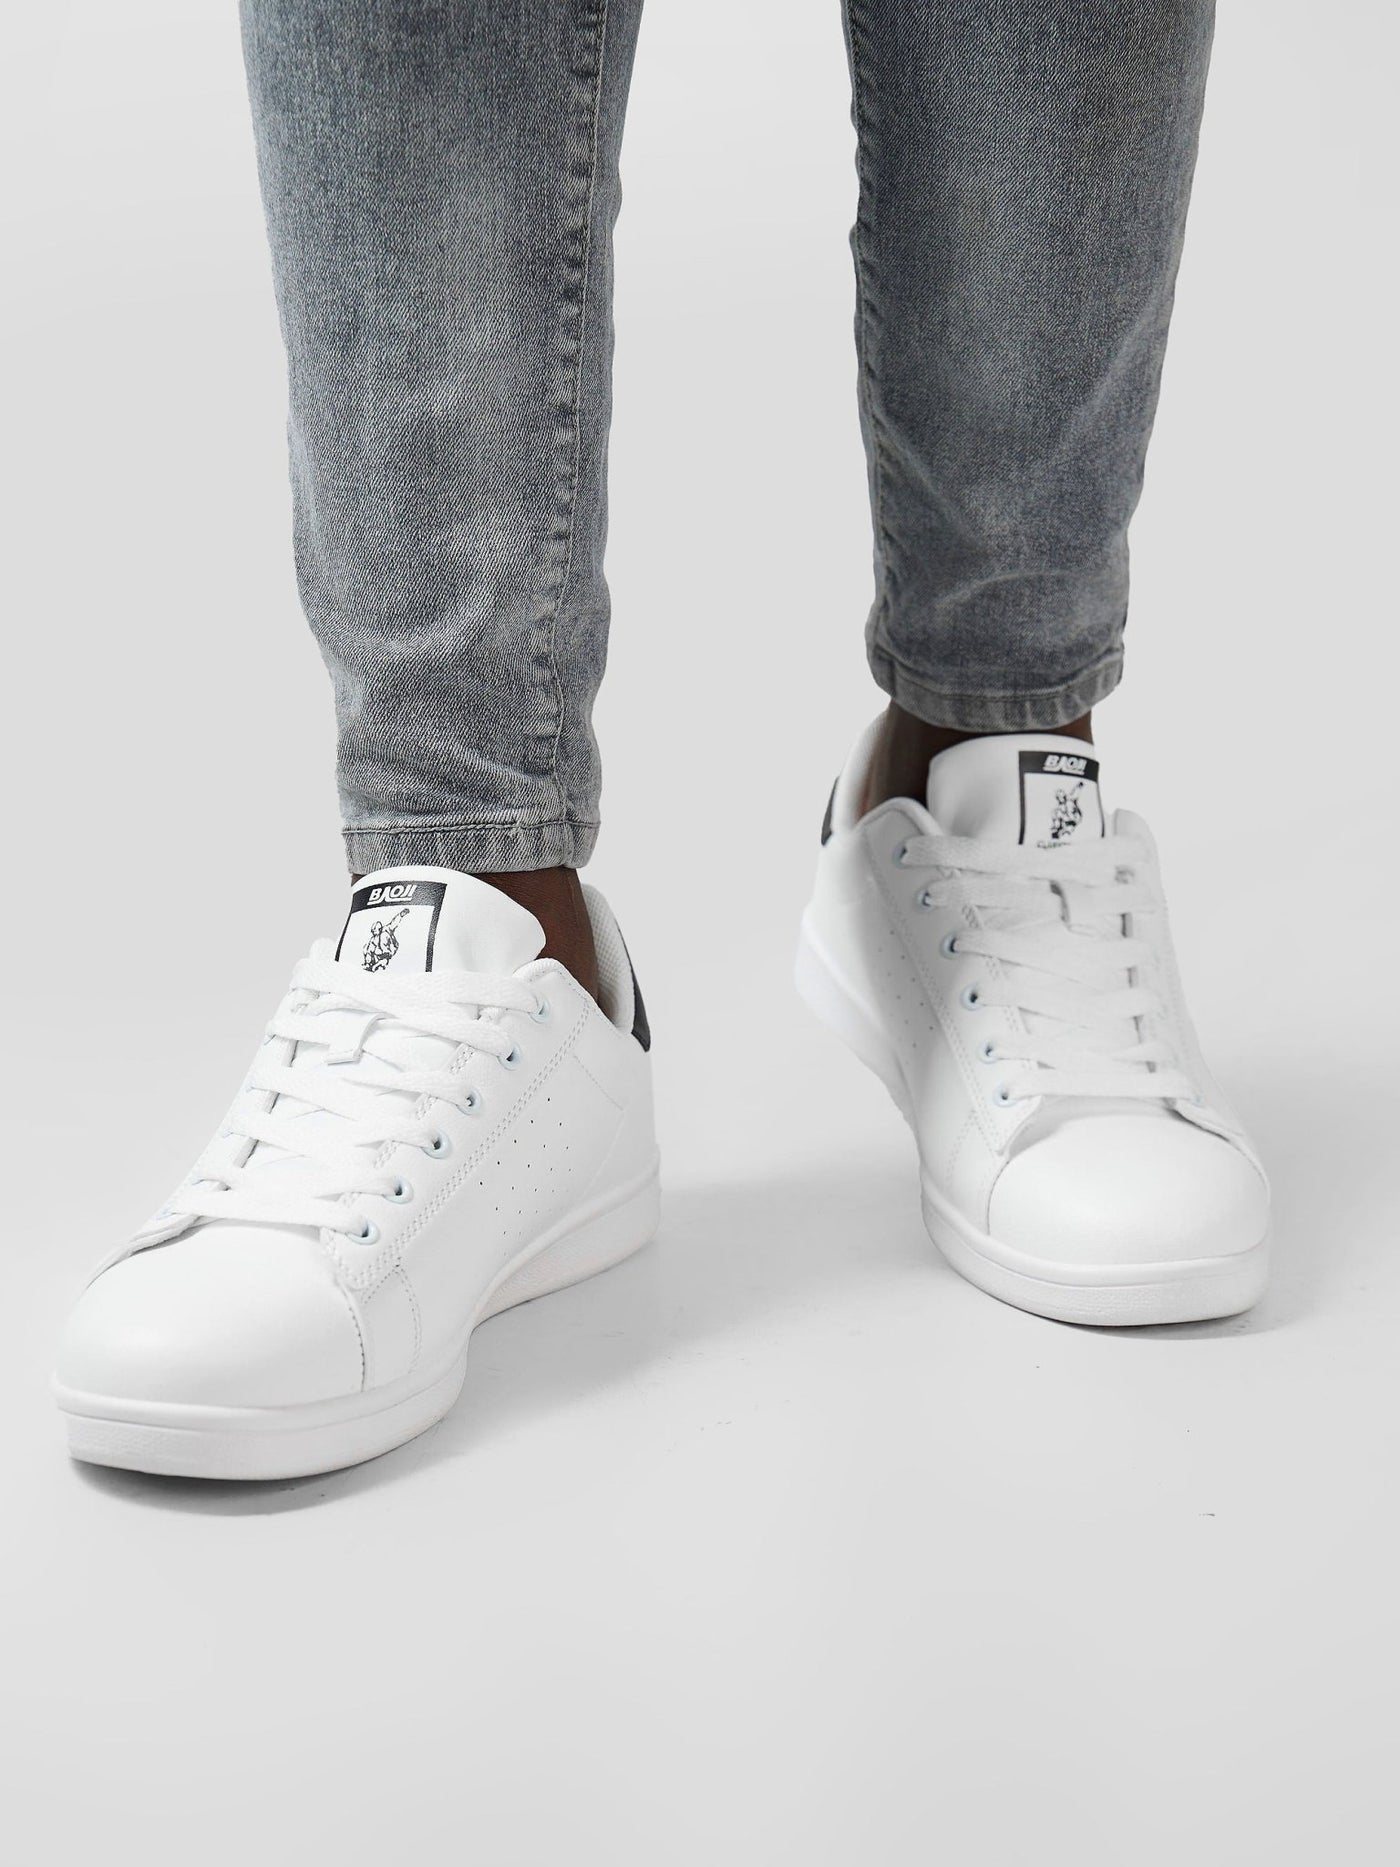 Ziatu Men's Colour Pop Sneakers - White / Black - Shopzetu